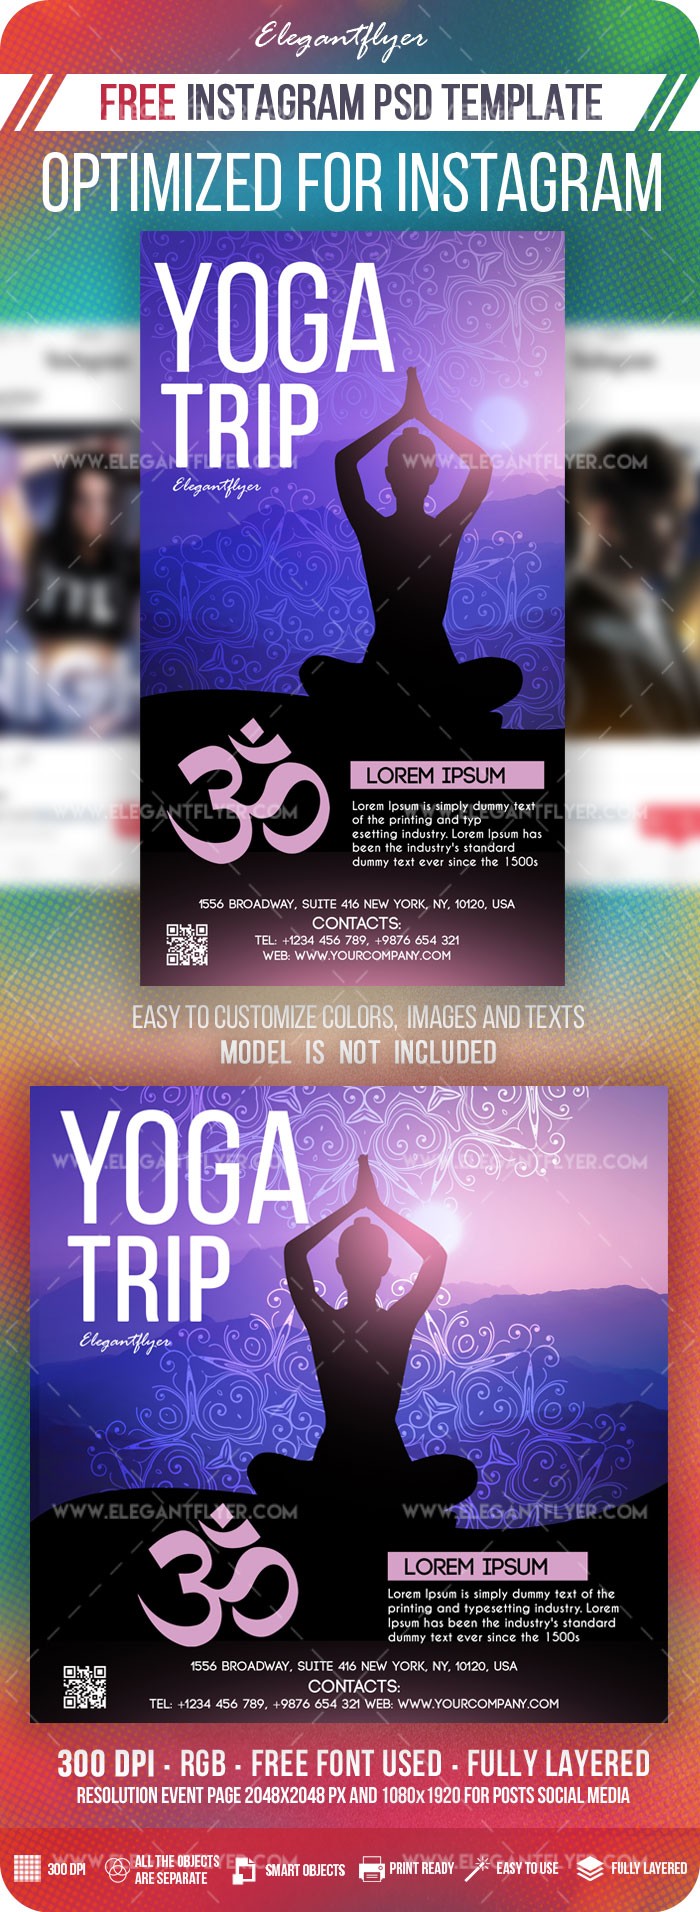 Viagem de Yoga no Instagram by ElegantFlyer